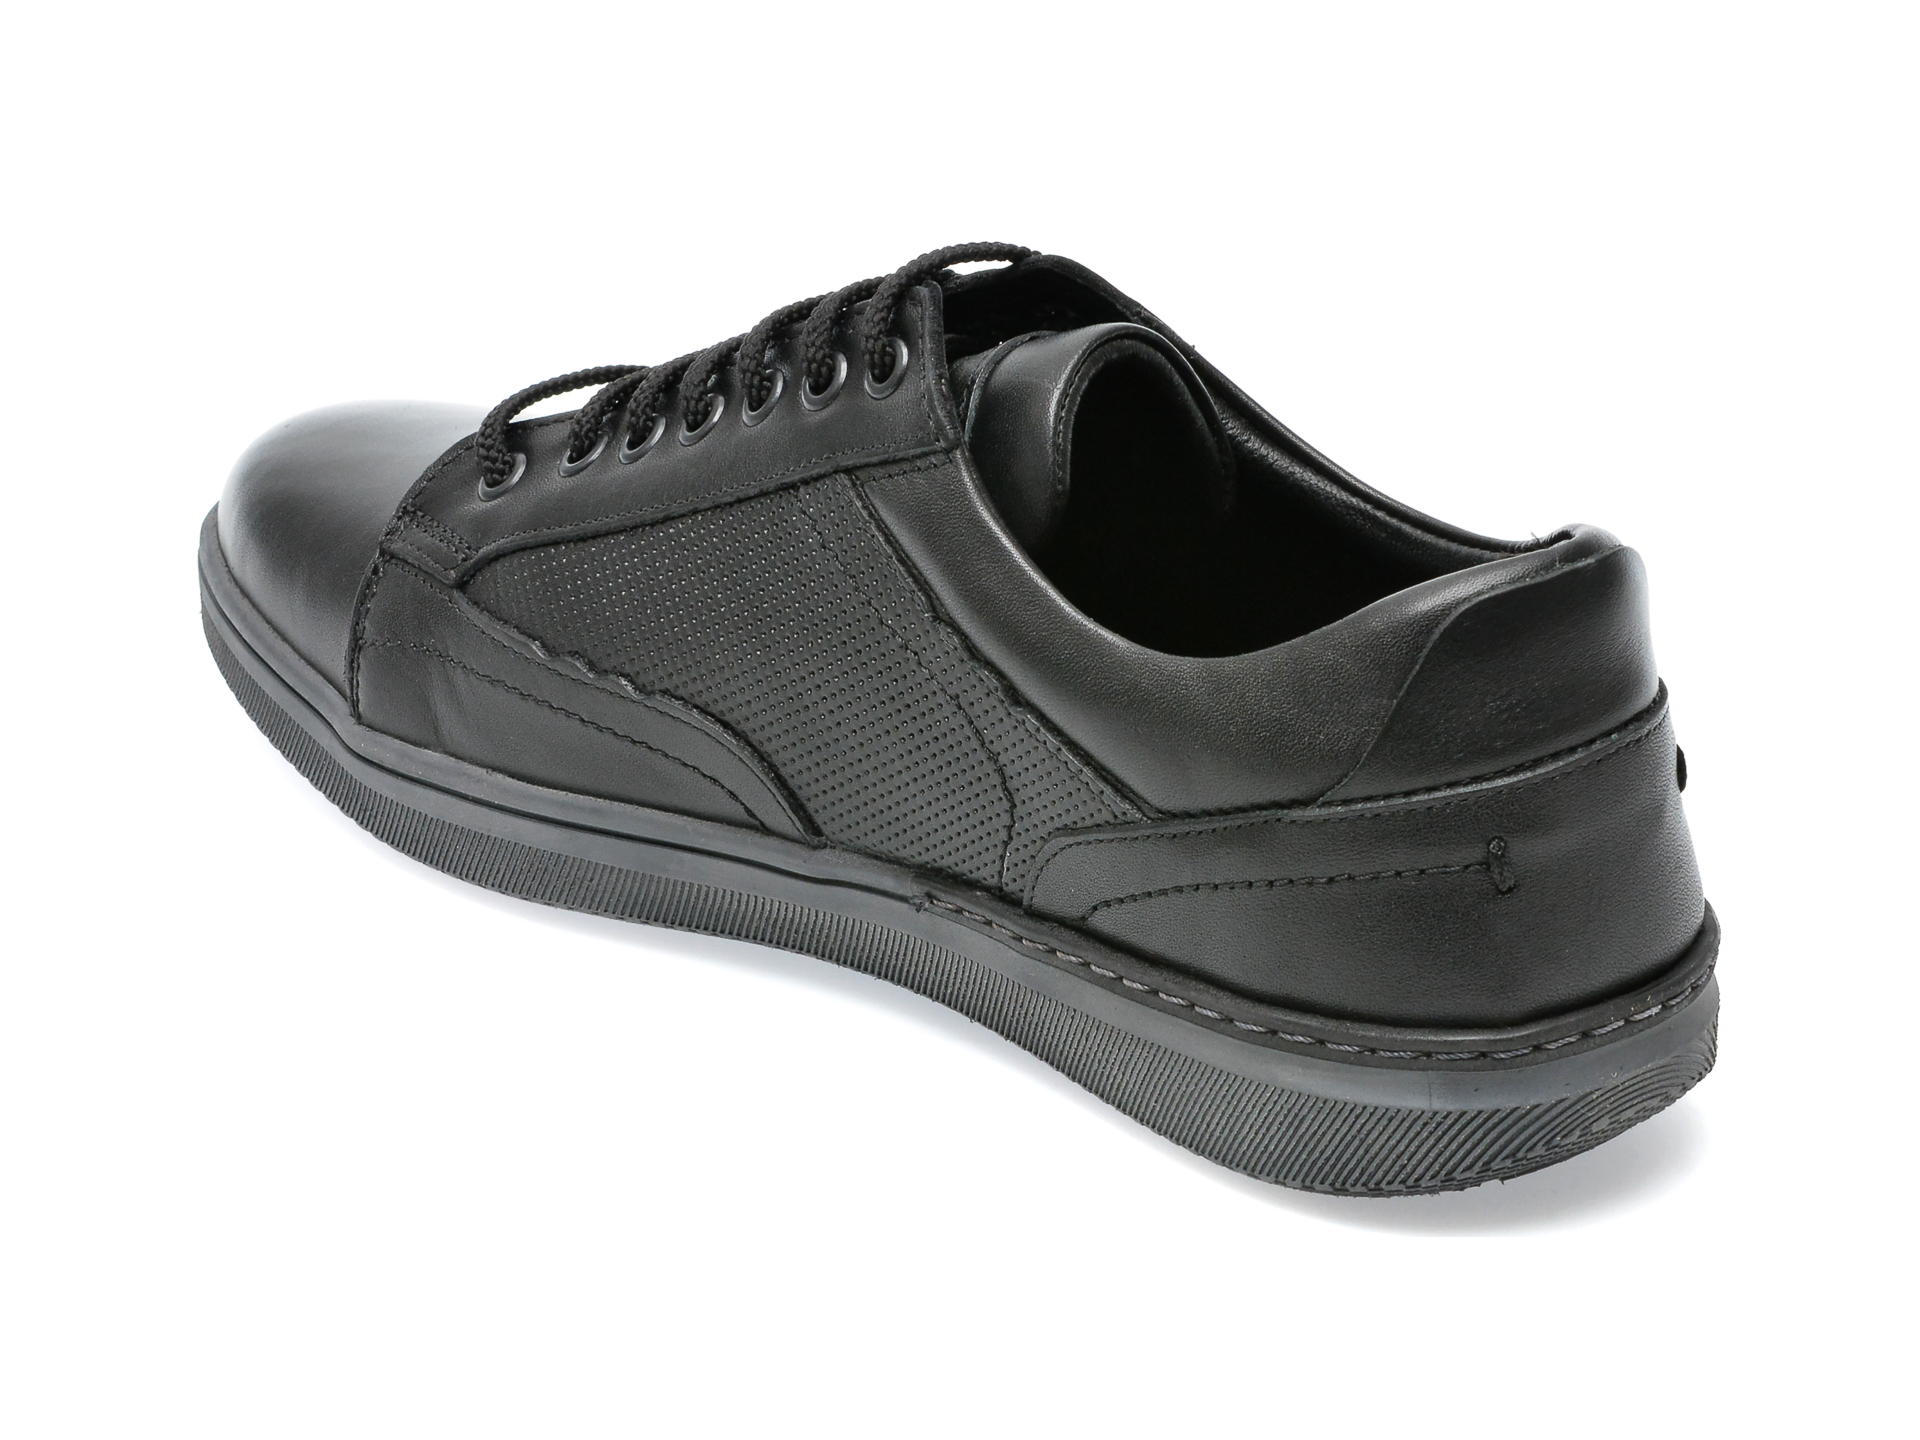 Poze Pantofi OTTER negri, 3423, din piele naturala Tezyo